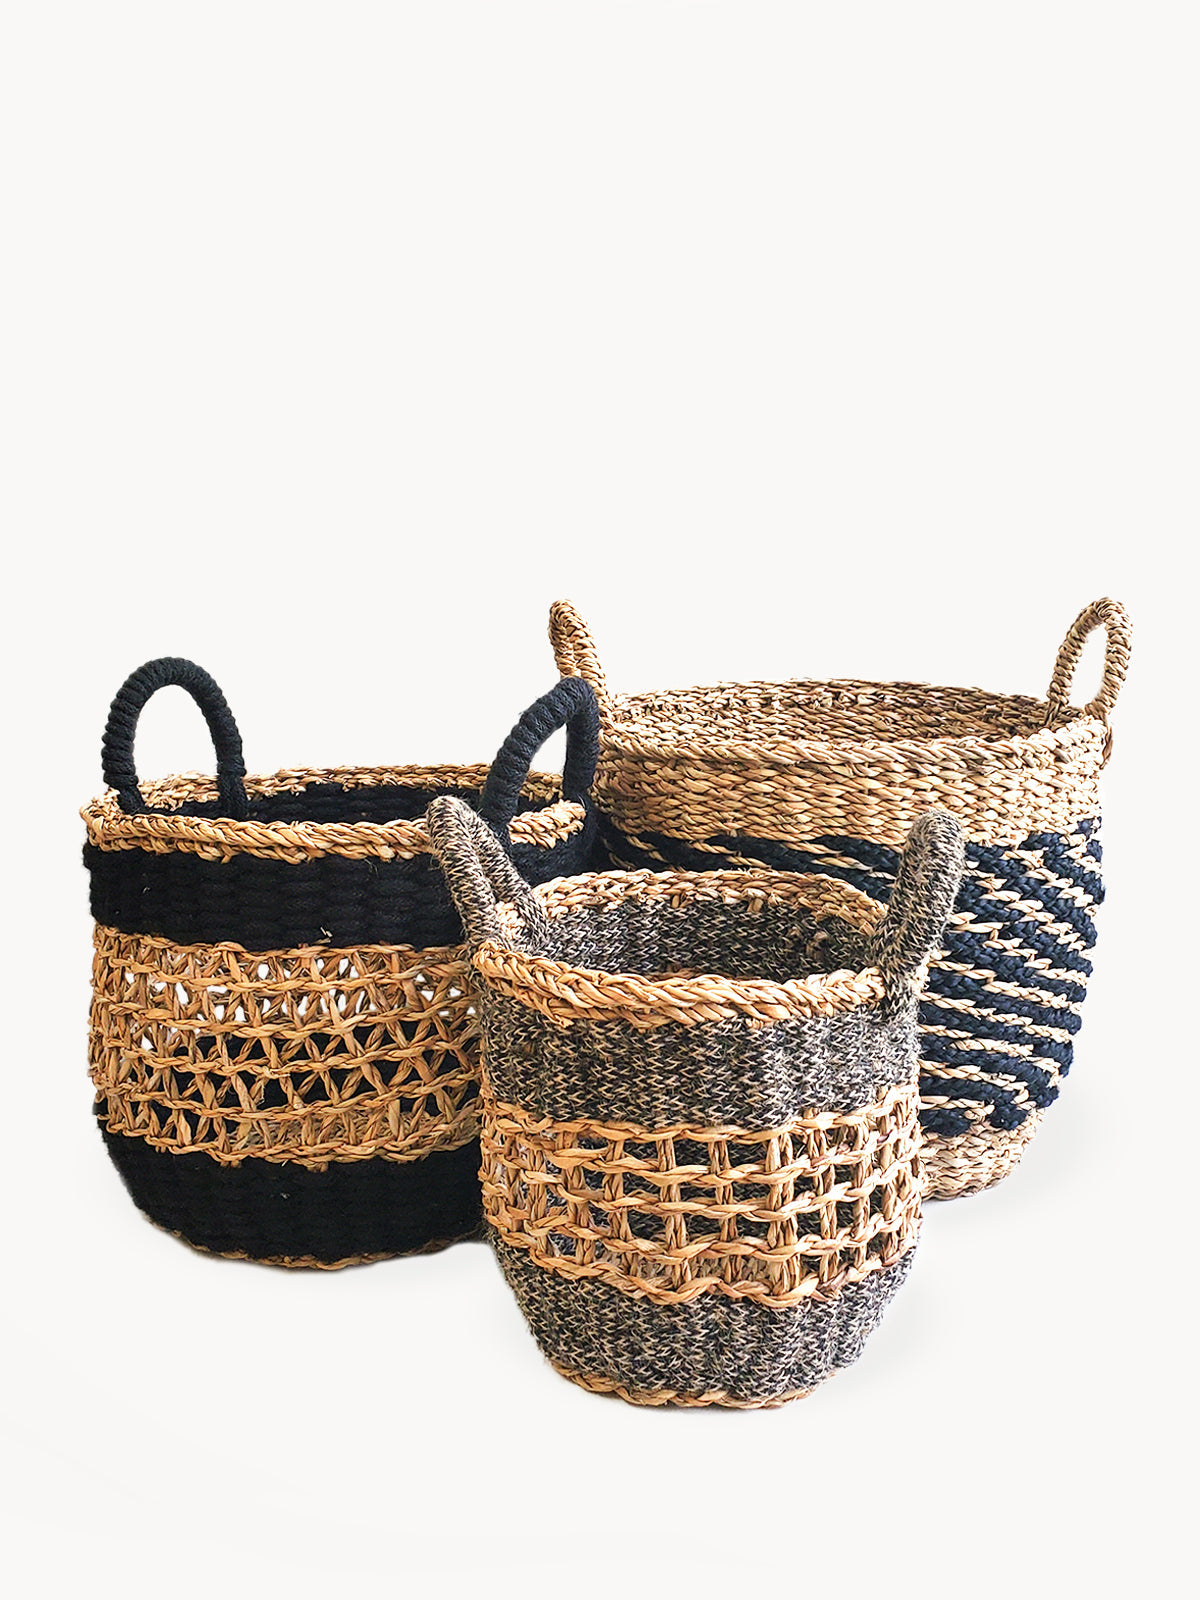 Ula Mesh Basket, Natural and black